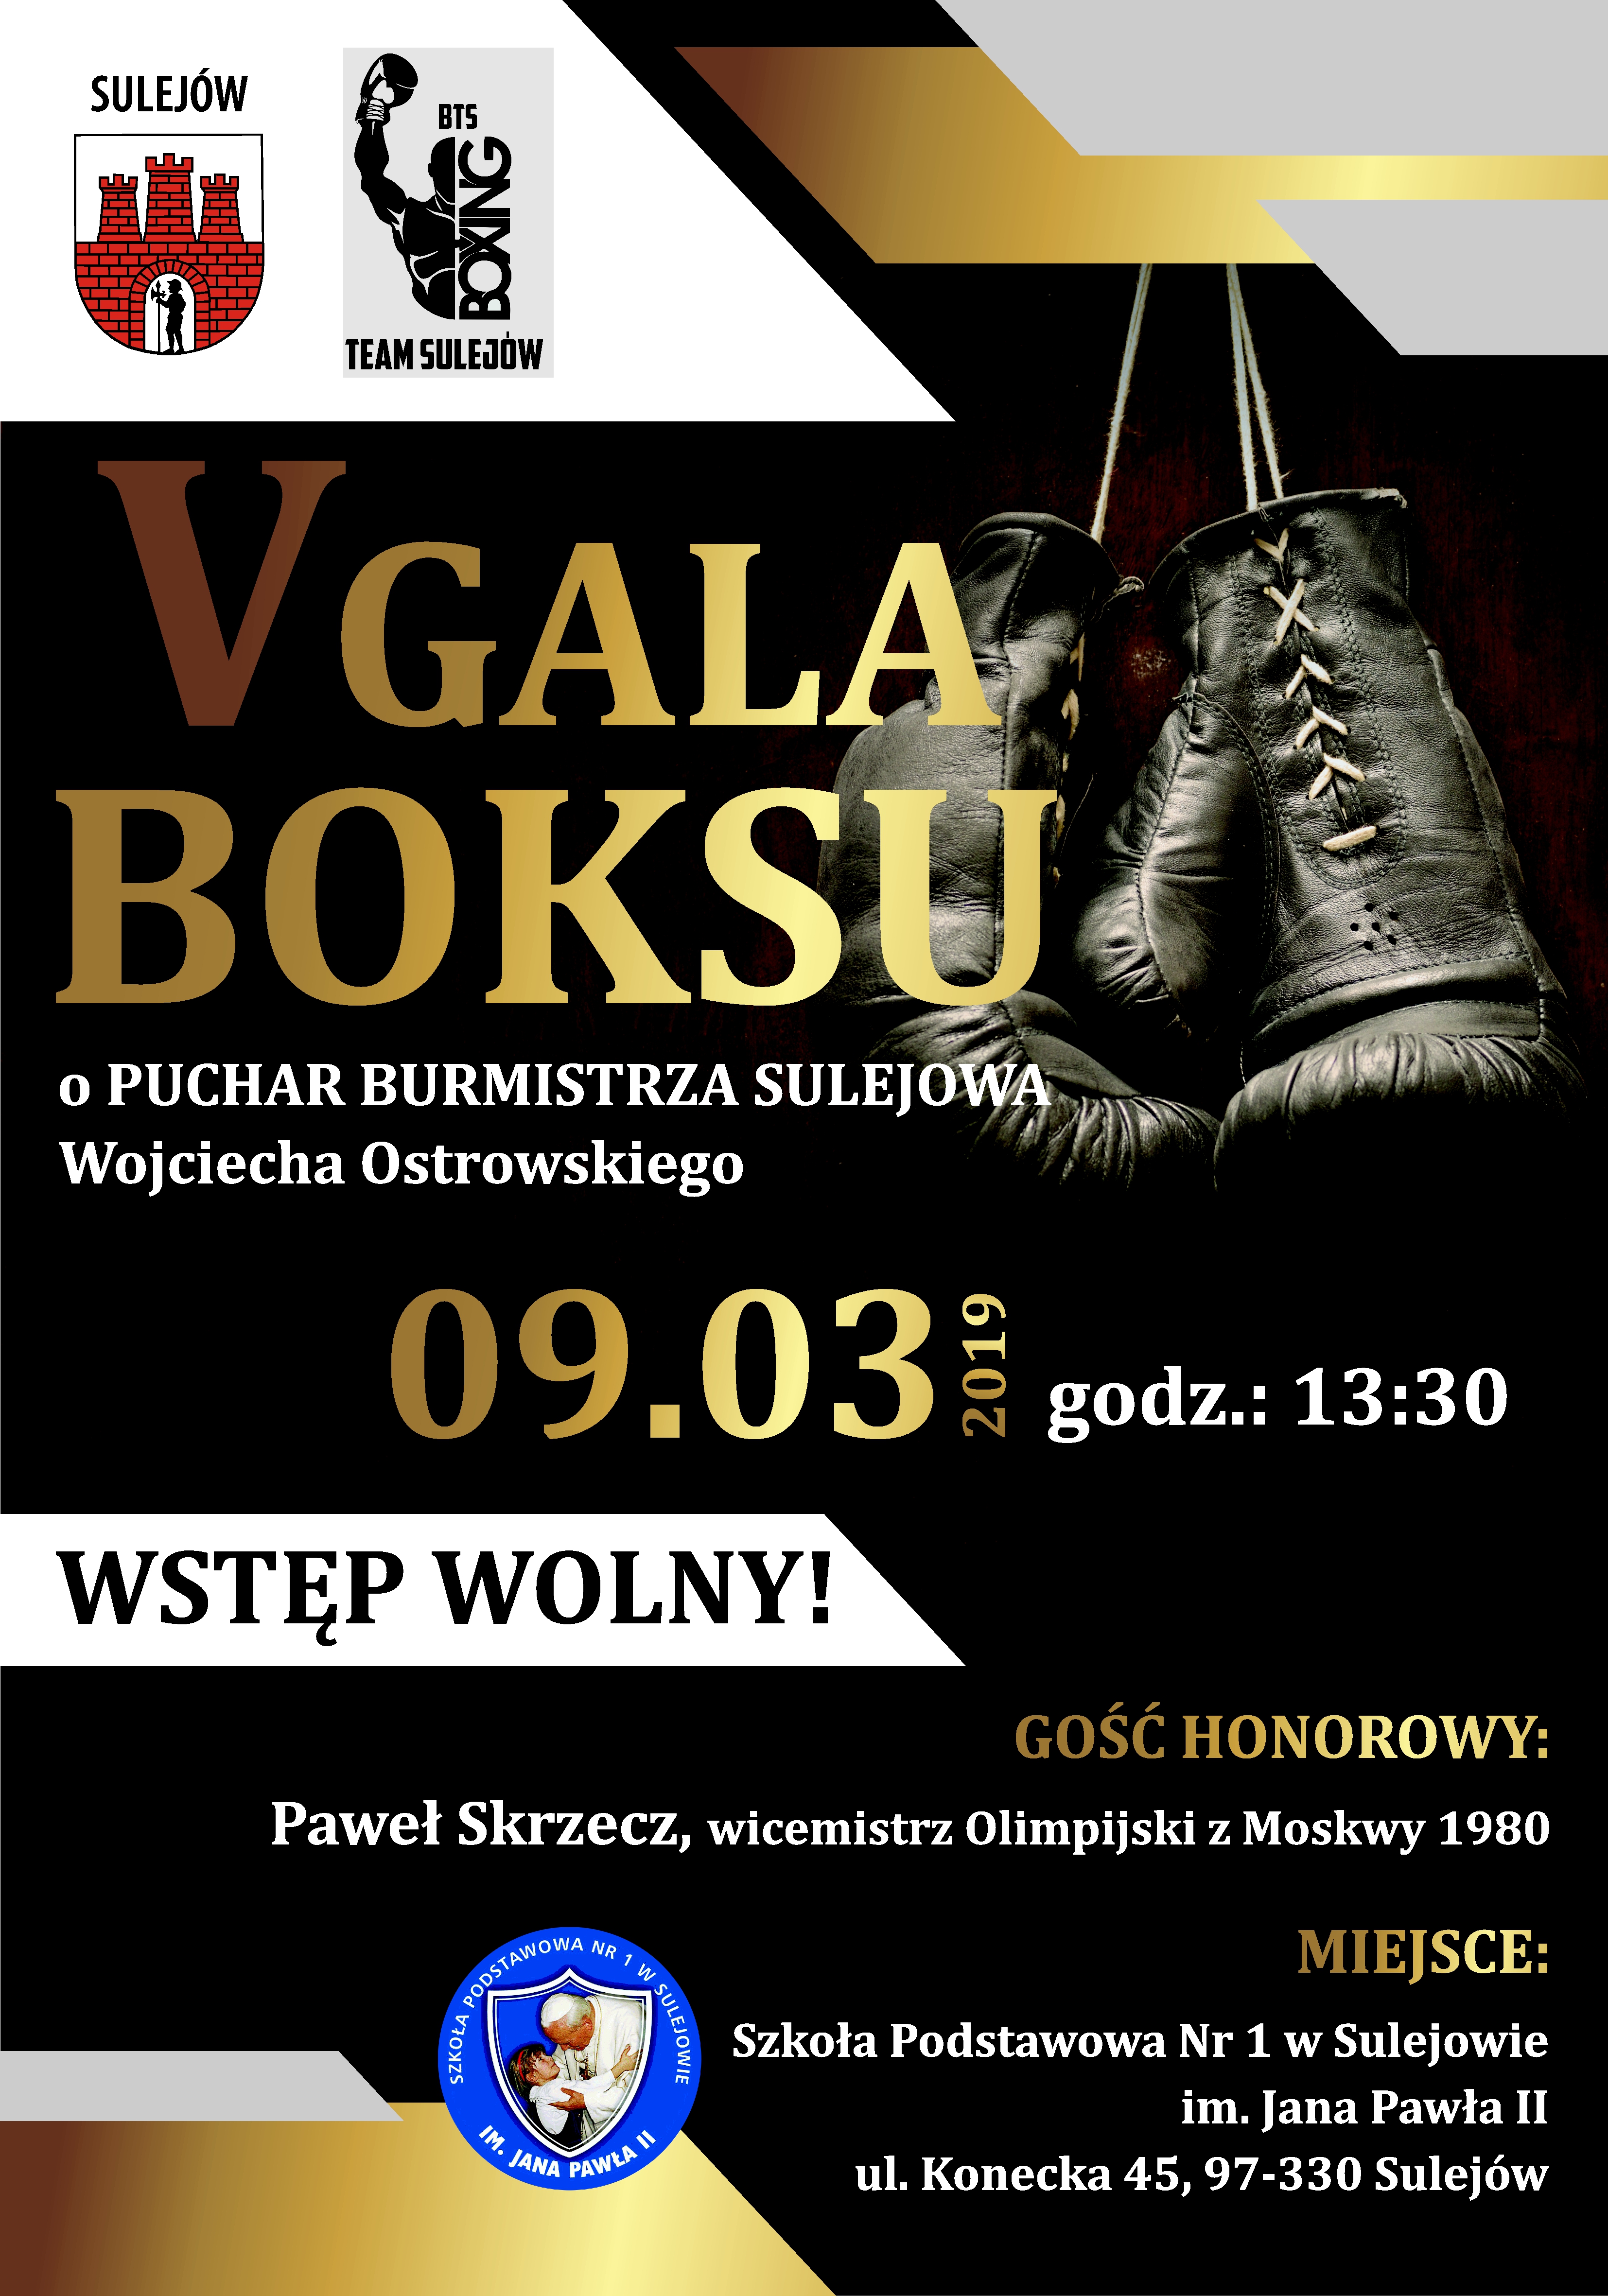 Photo of Gala boksu w Sulejowie